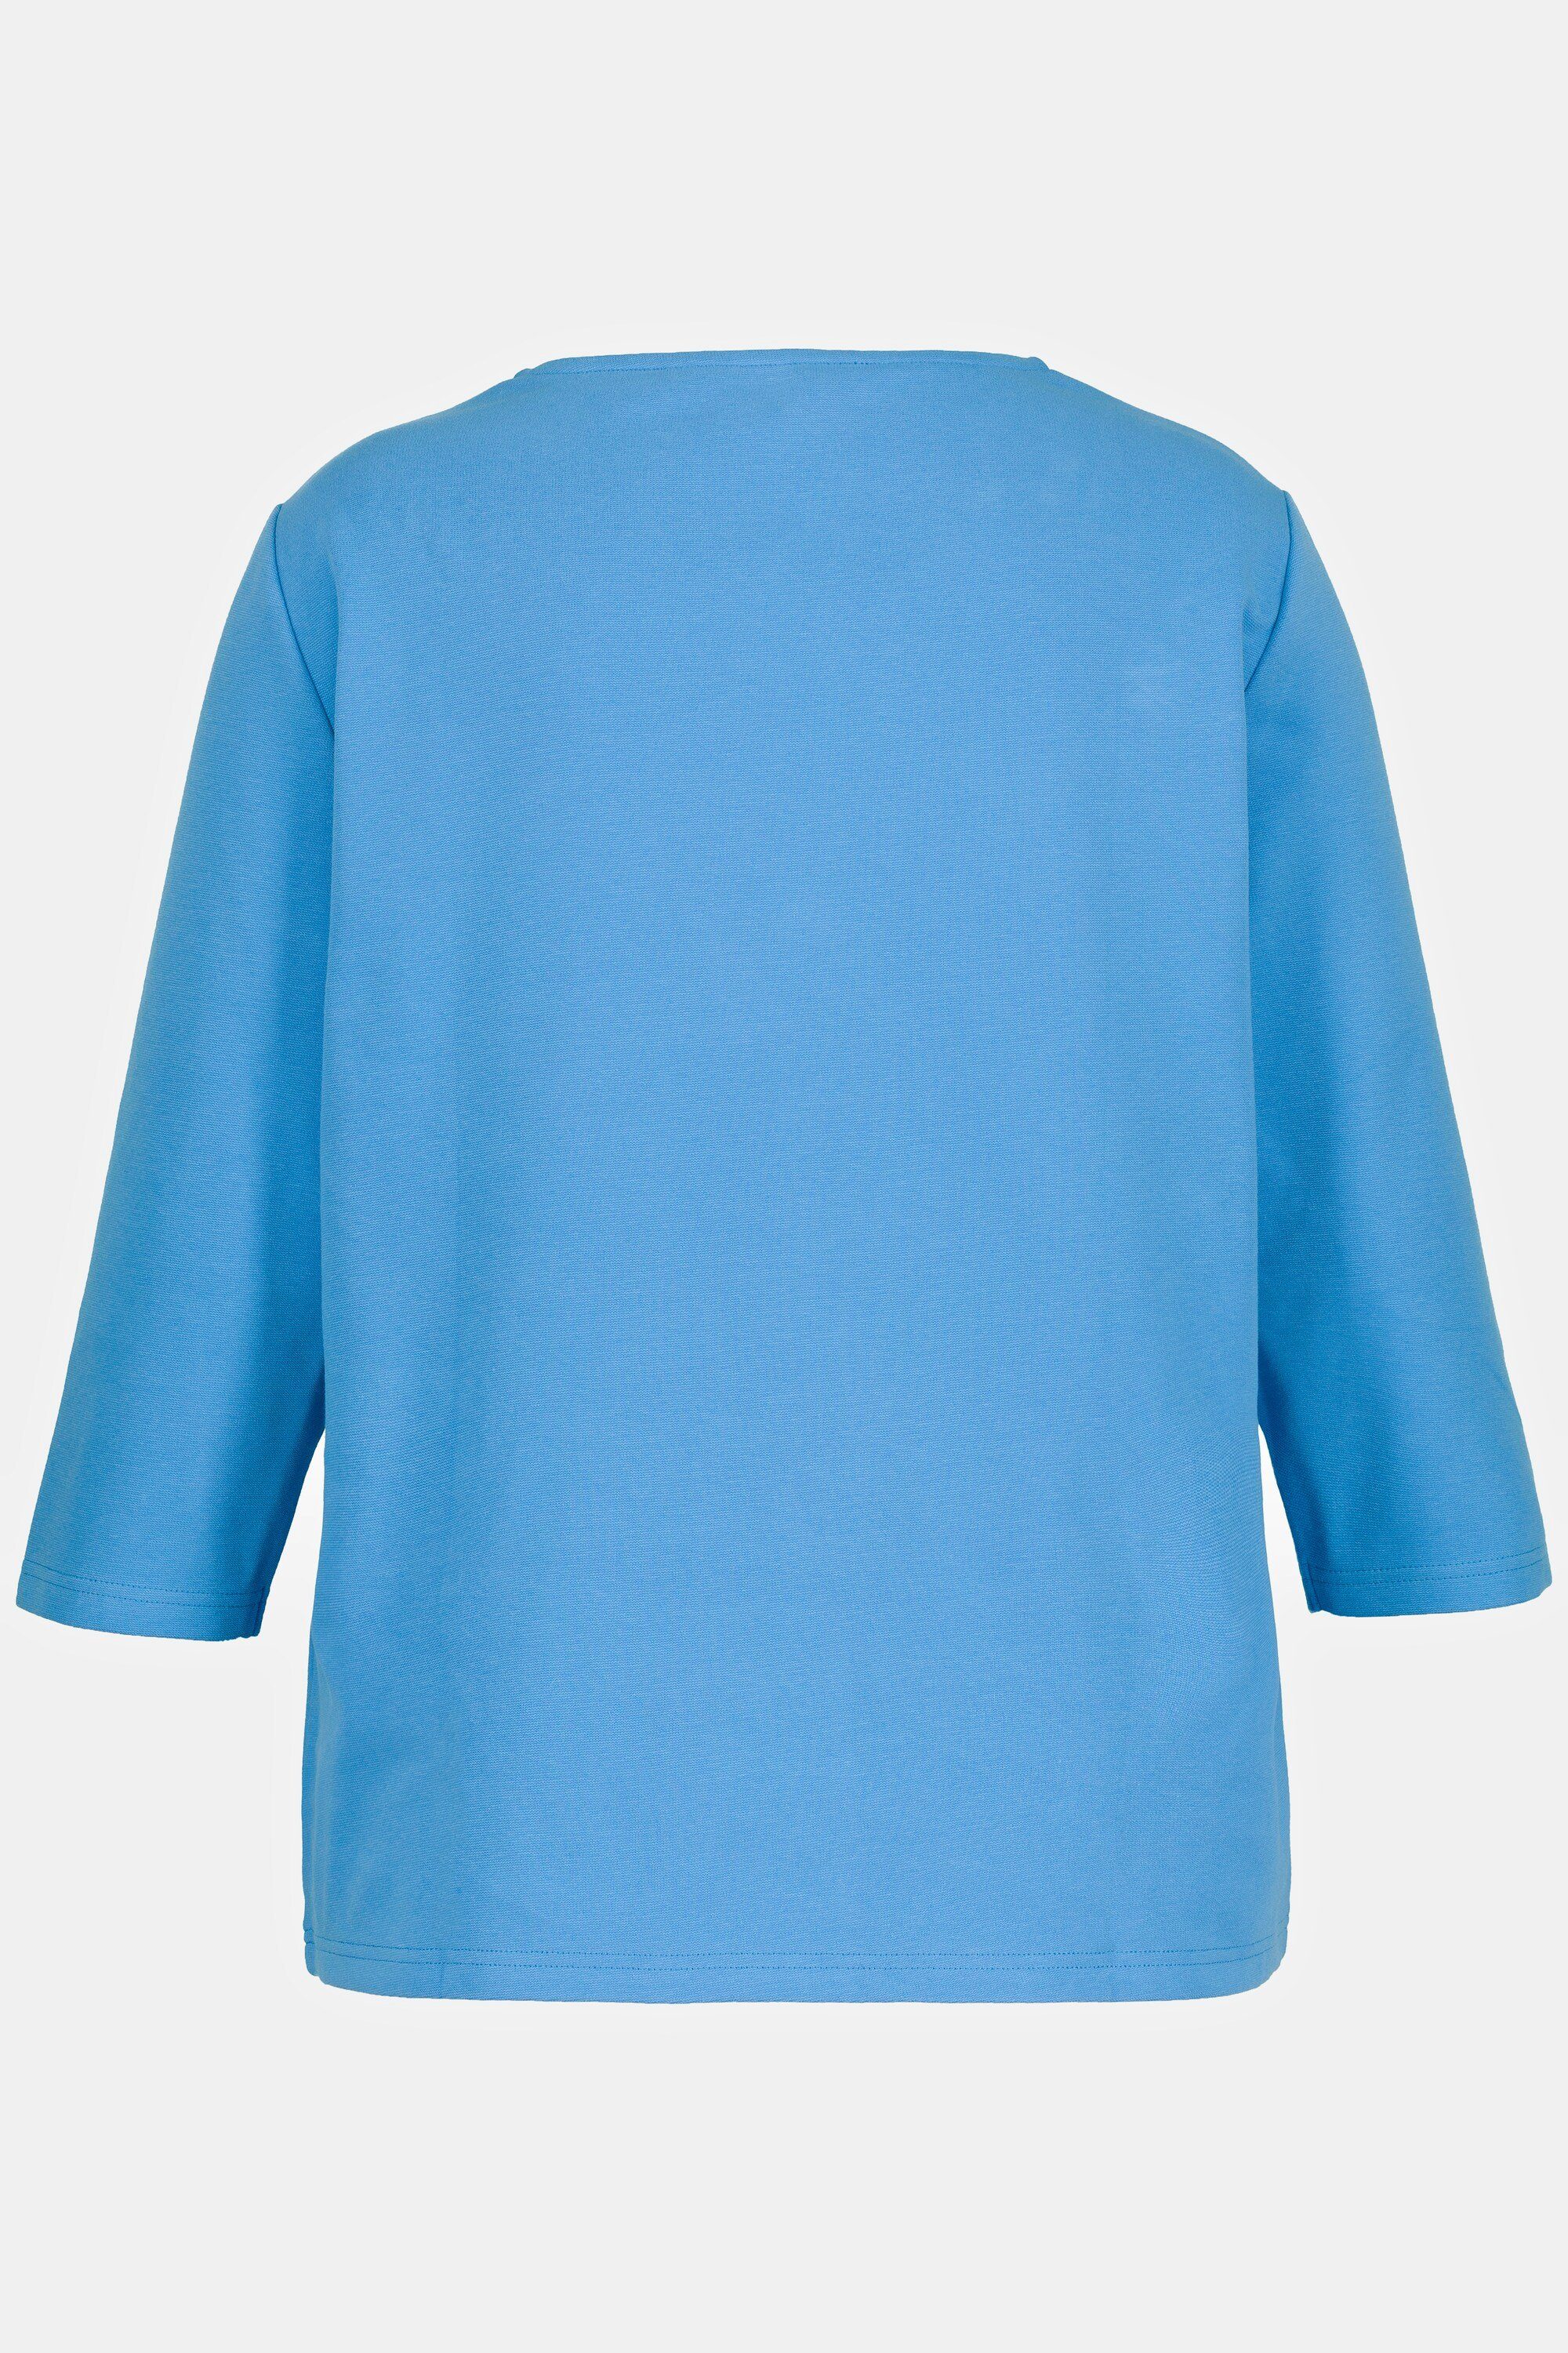 Classic Carrée-Ausschnitt Shirt stahlblau Sweatshirt Popken Quernaht 3/4-Arm Ulla